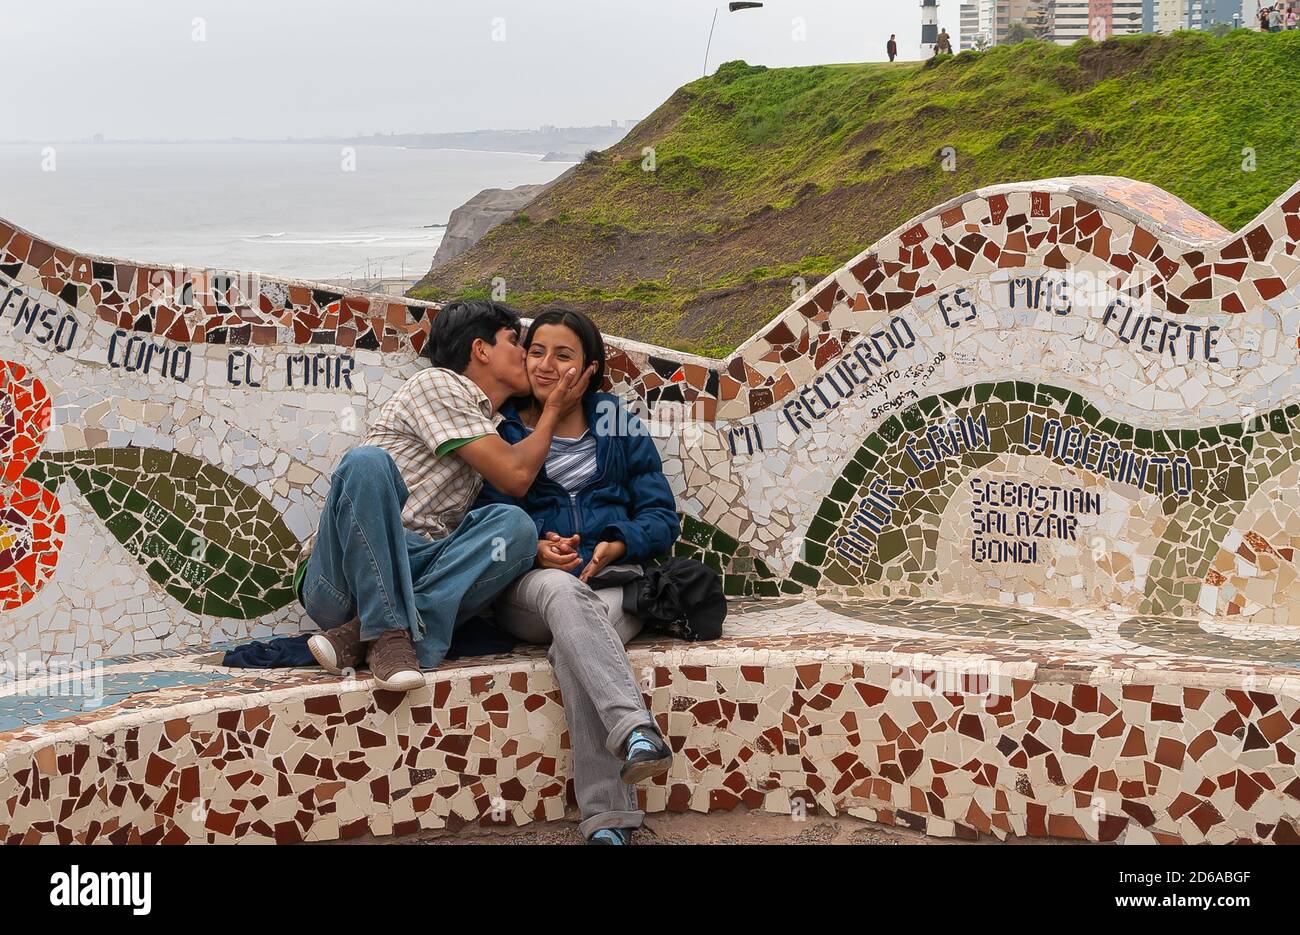 Miraflores, Pérou - 4 décembre 2008 : Parque del Amor, Love Park. Jeune couple embrassant sur un banc en mosaïque avec océan et falaise verte en arrière-plan. Banque D'Images